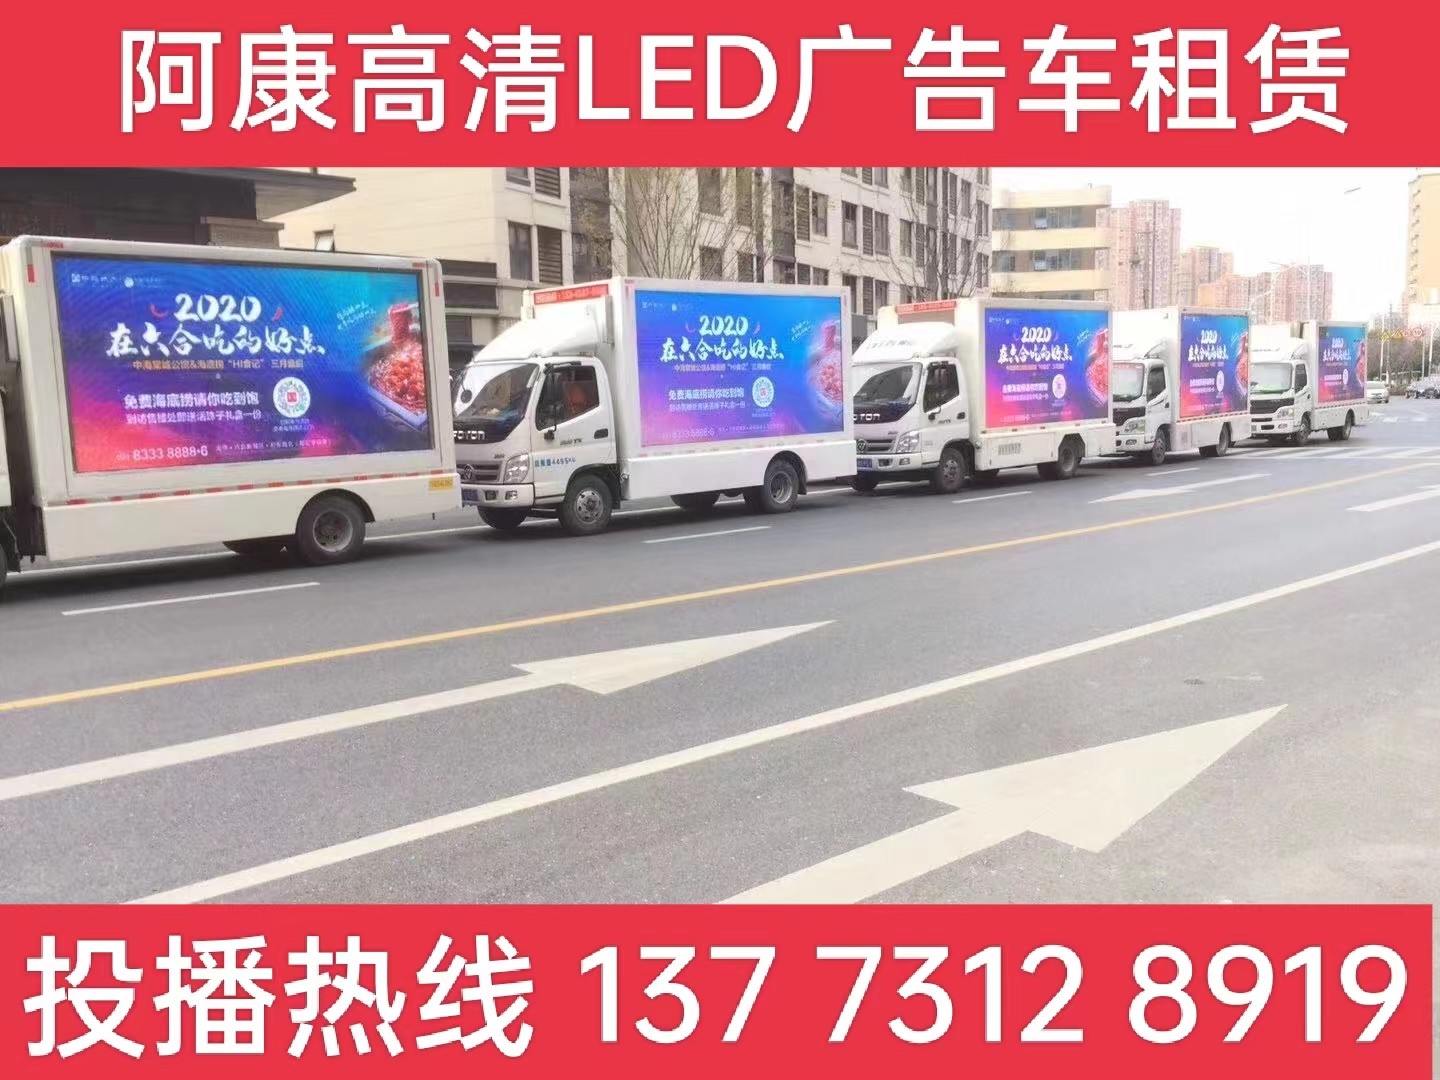 镇江宣传车出租-海底捞LED广告